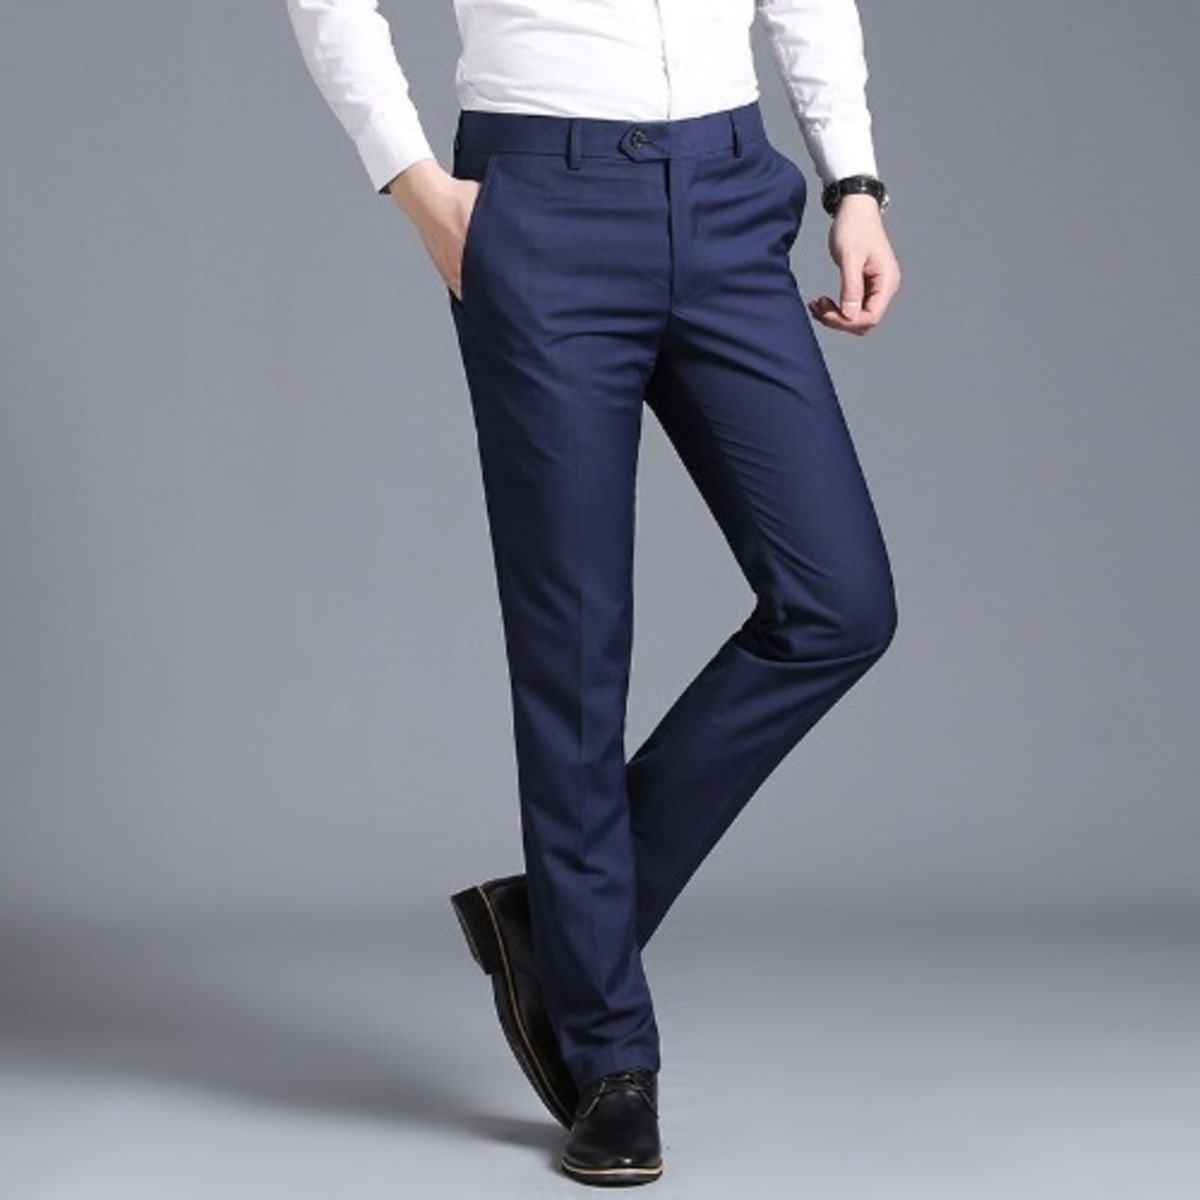 Custom Fit Men's Straight Pant Trouser